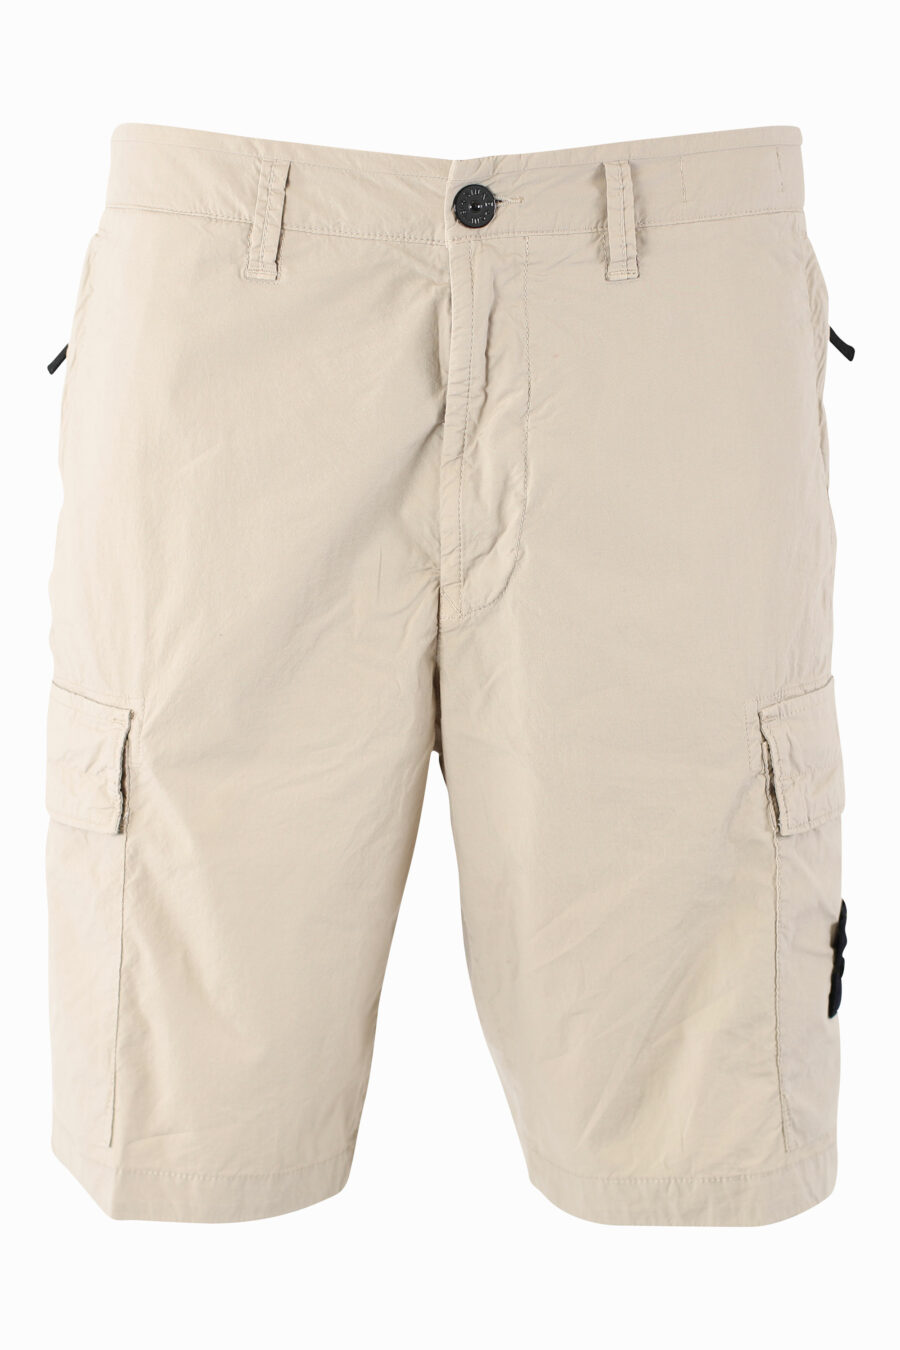 Pantalón corto midi beige estilo cargo - IMG 1015